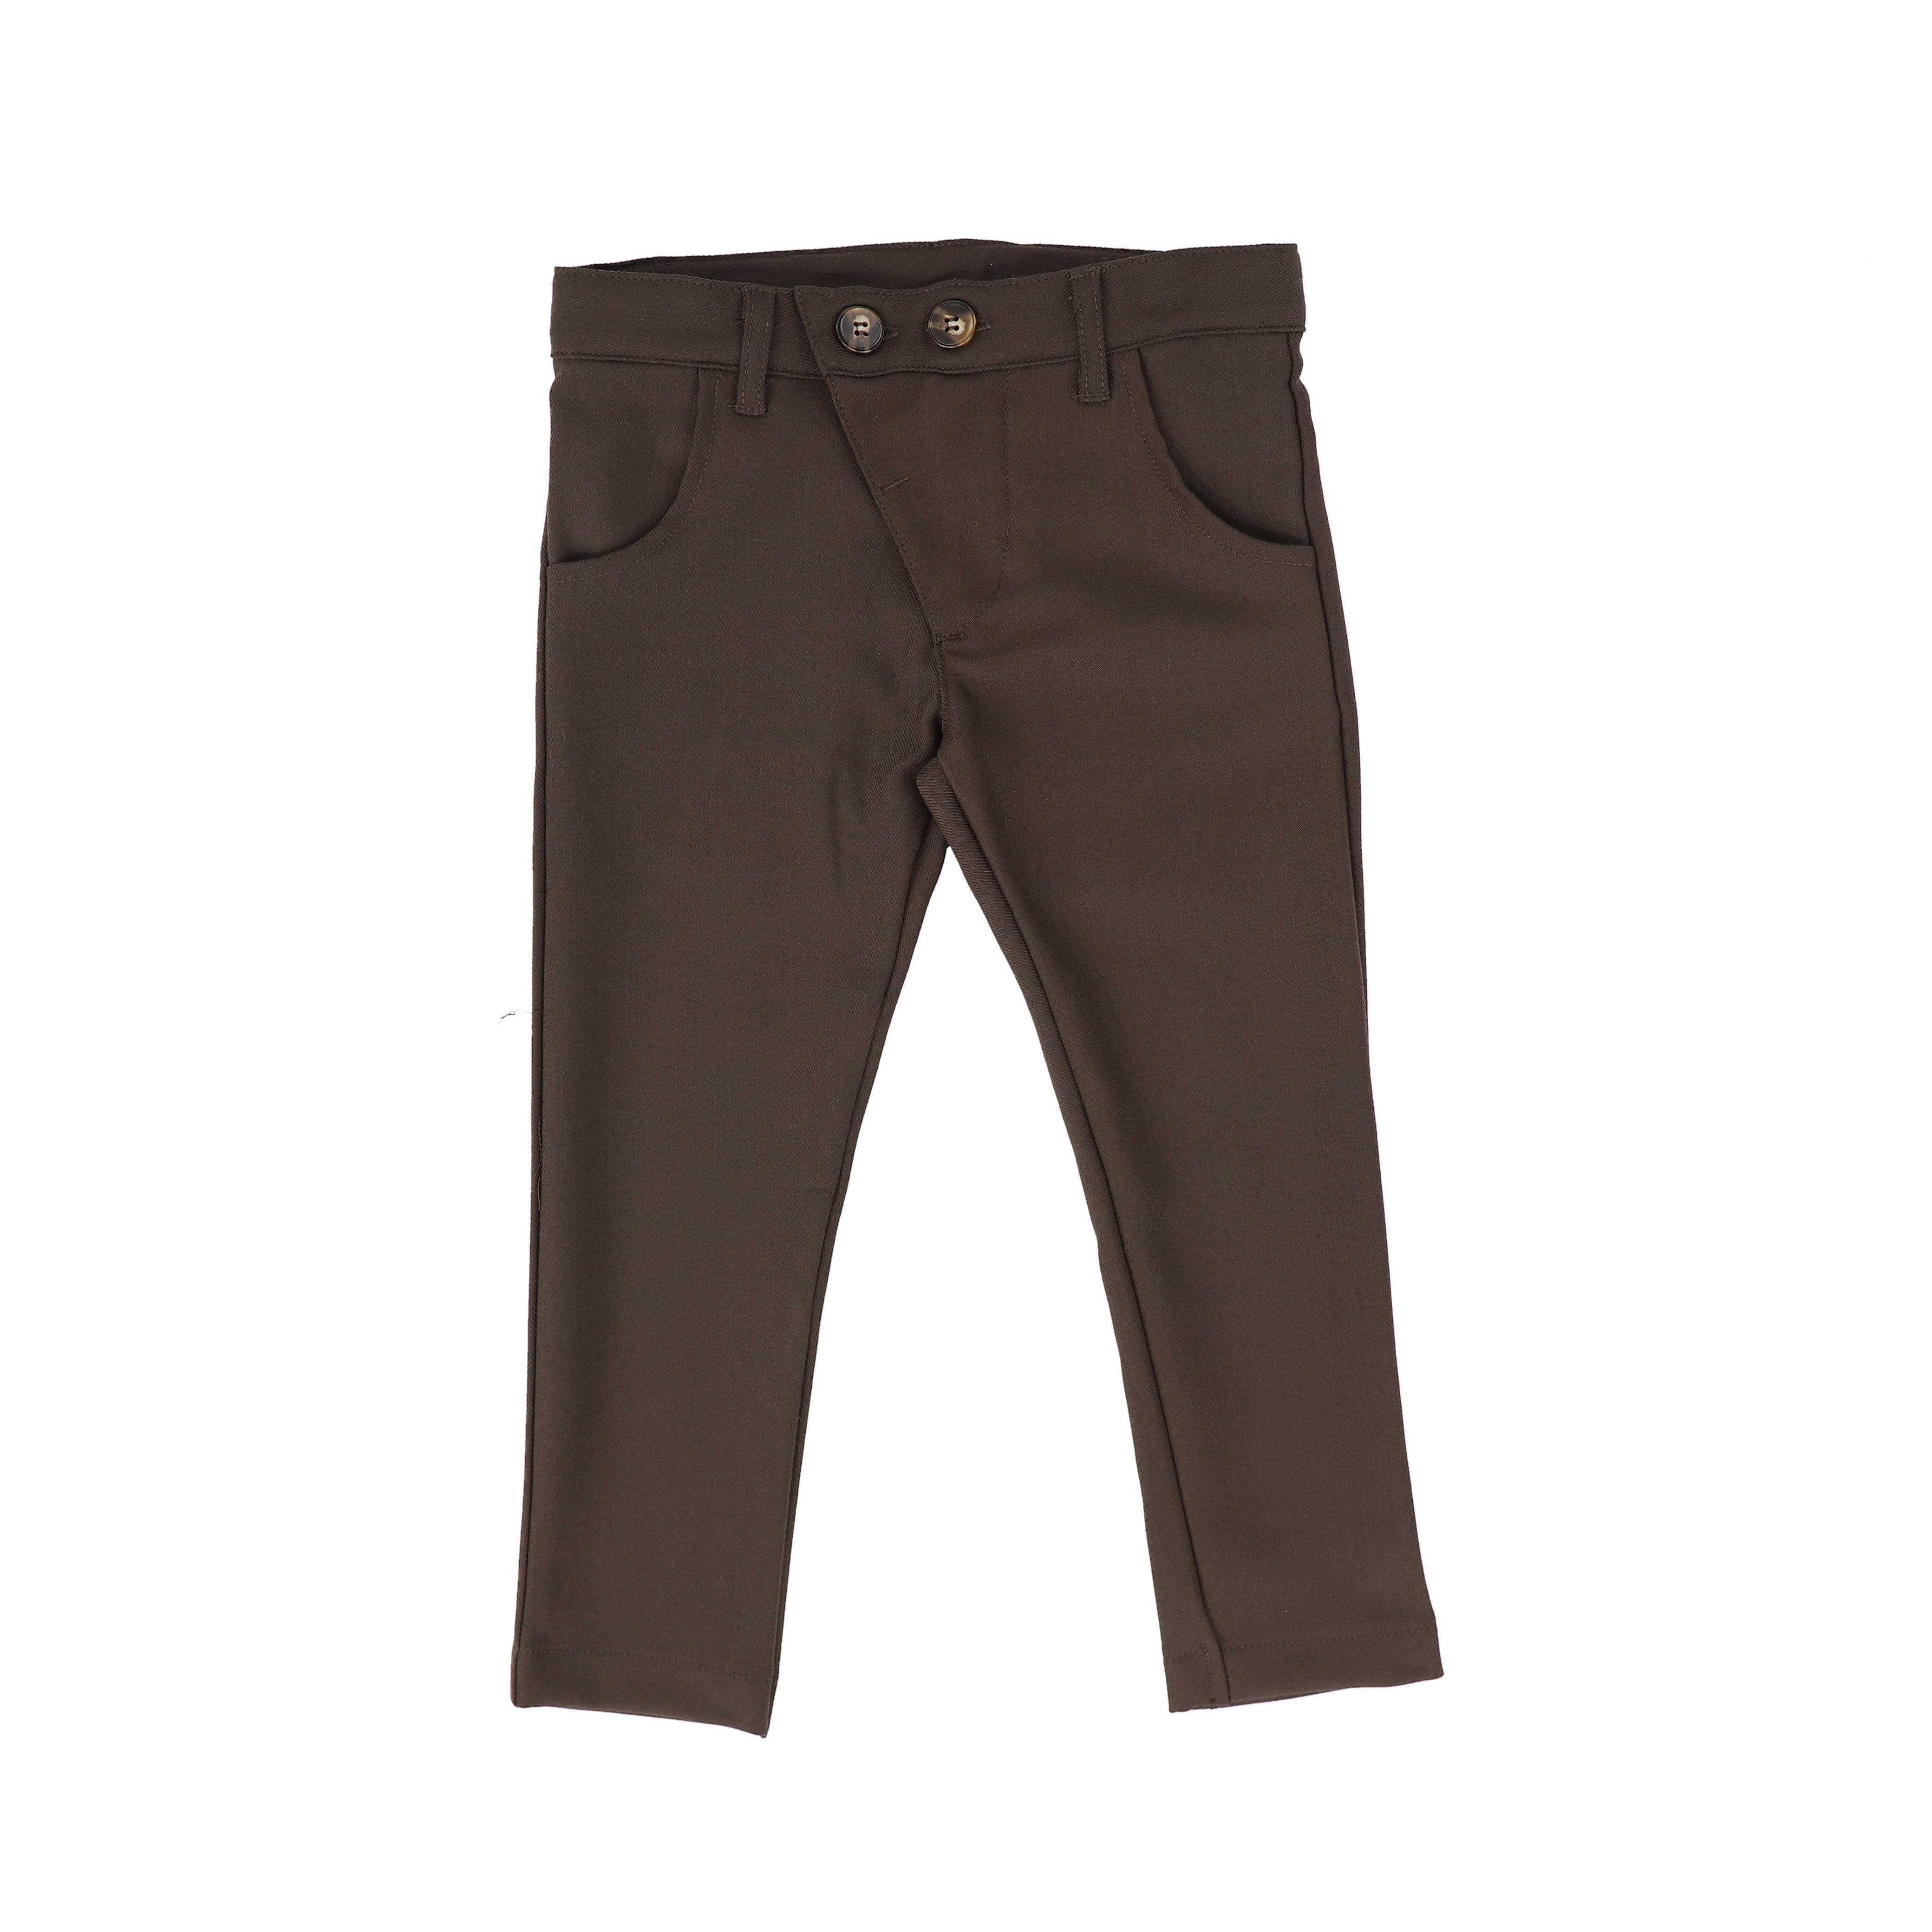 Buy KG for Kids Denim Jeans| Trending Full Length Pant for Boys | Kids |  Black_4-5 yrs at Amazon.in